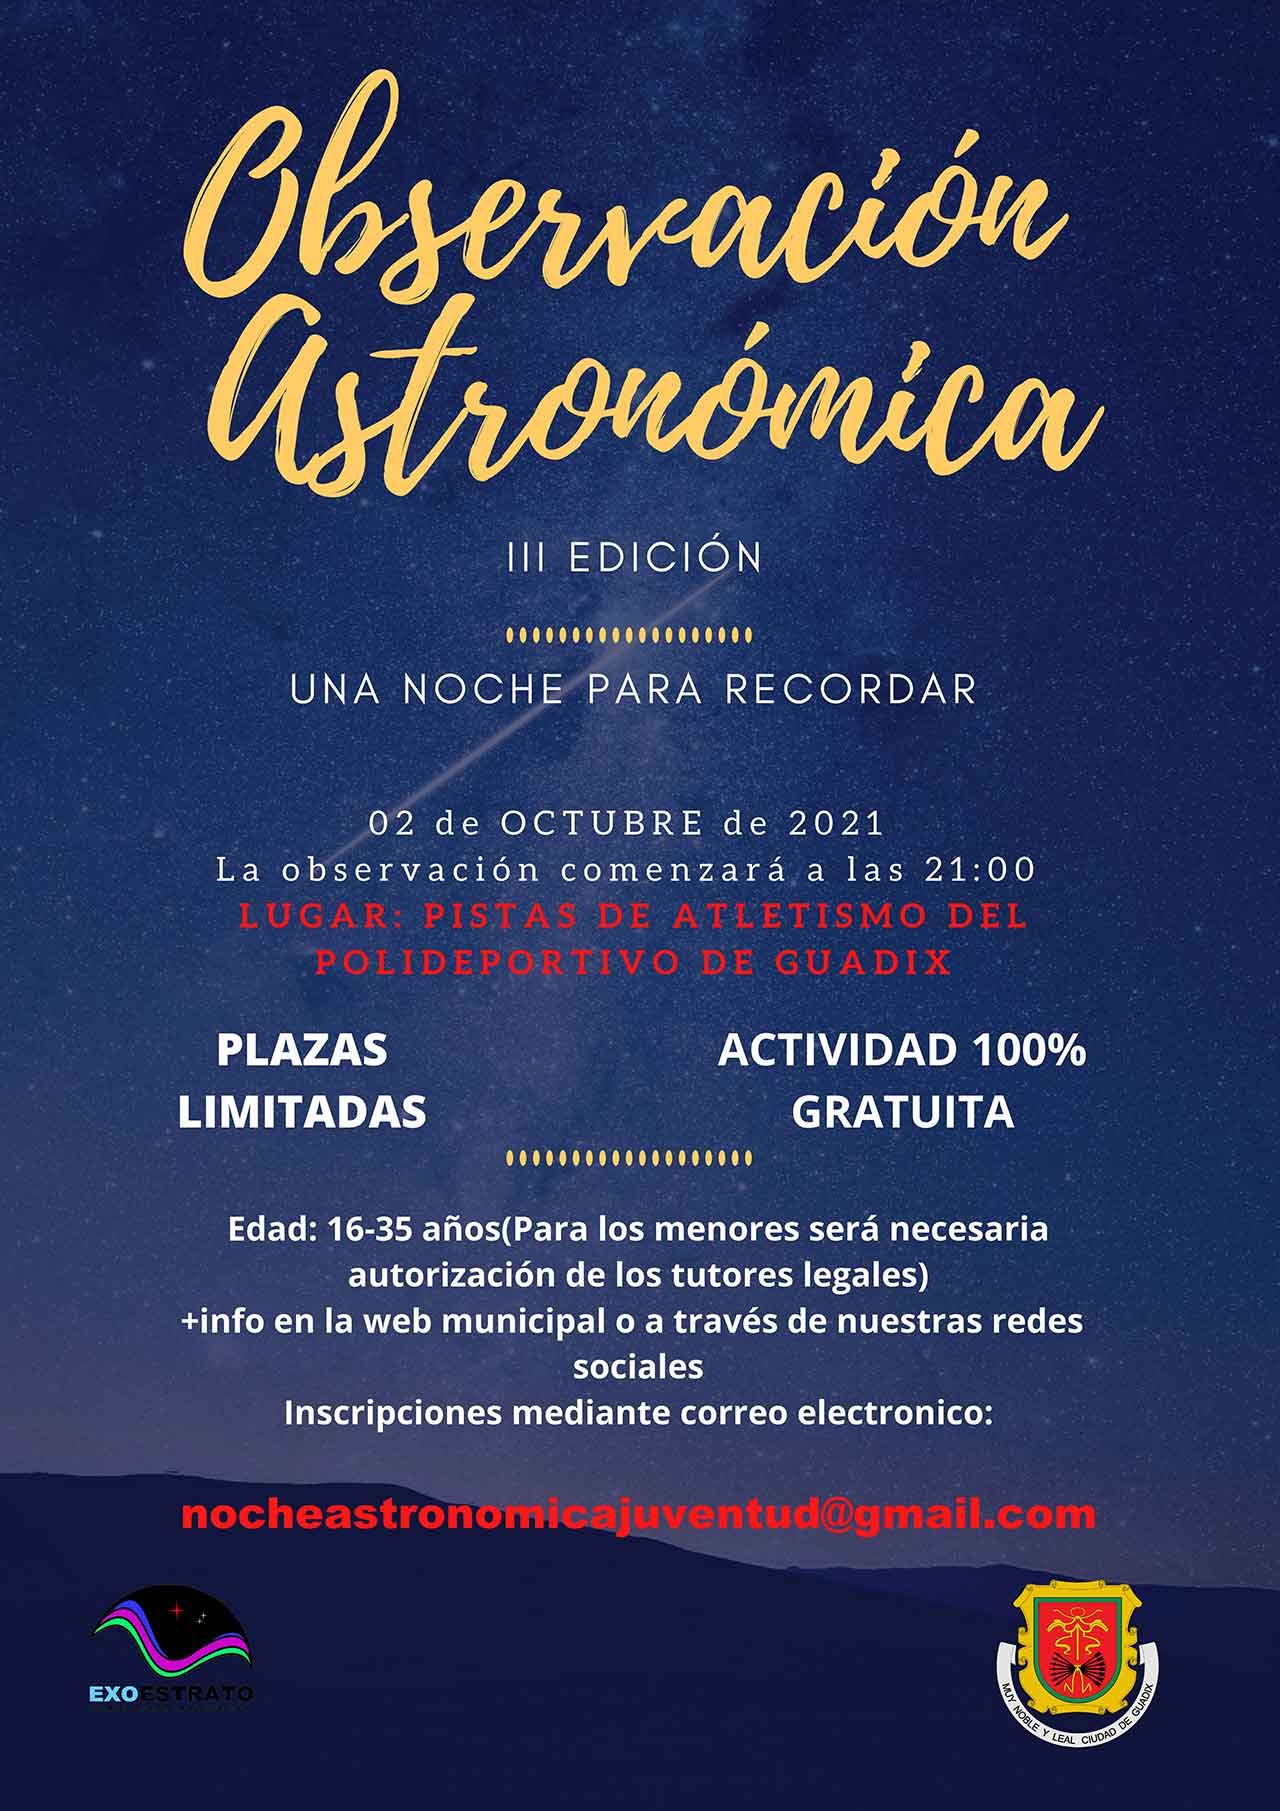 Observación astronómica en Guadix